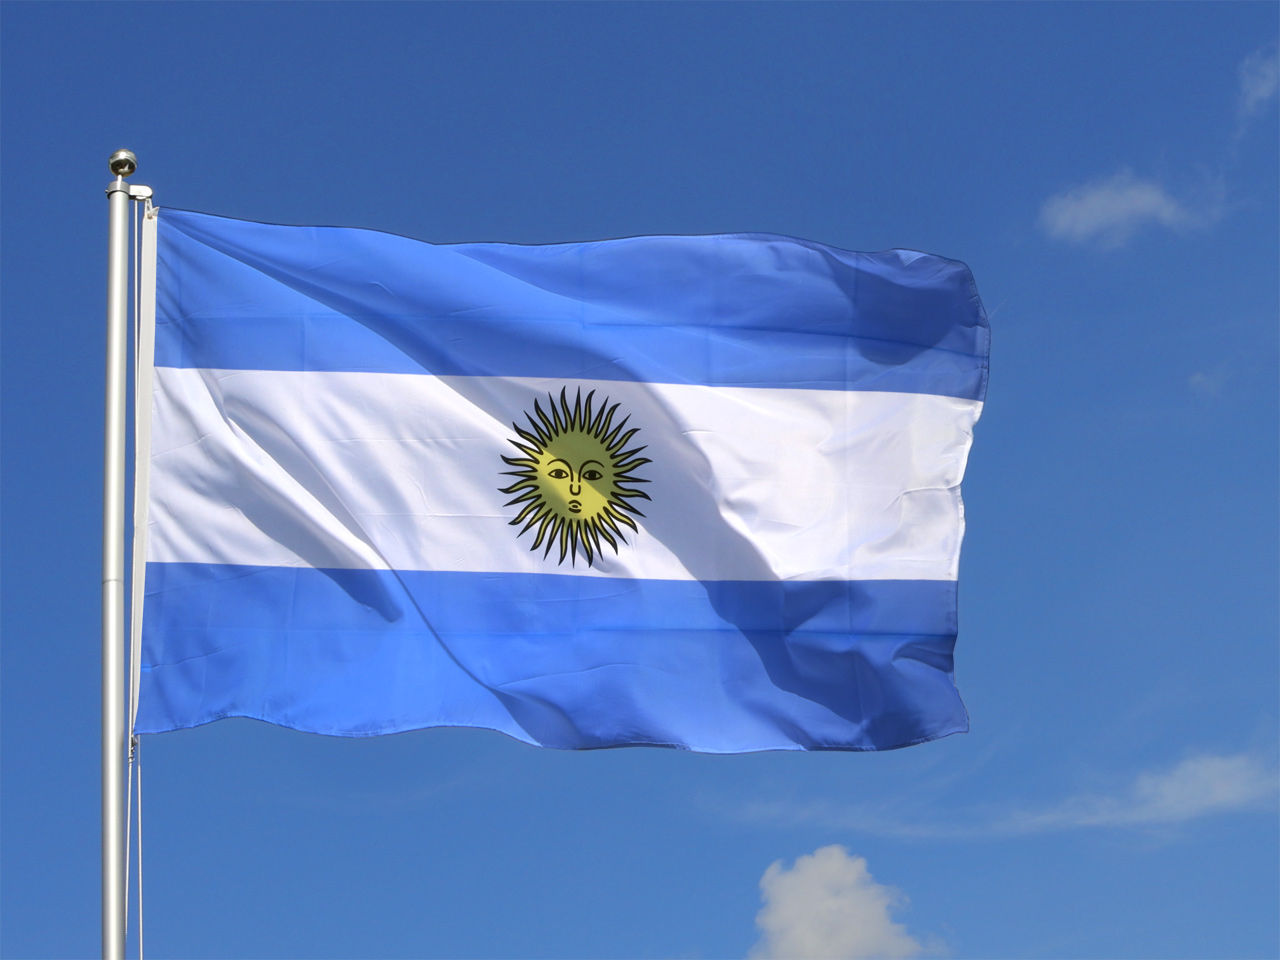 Argentinien Hissflagge argentinische Fahnen Flaggen 150x250cm 